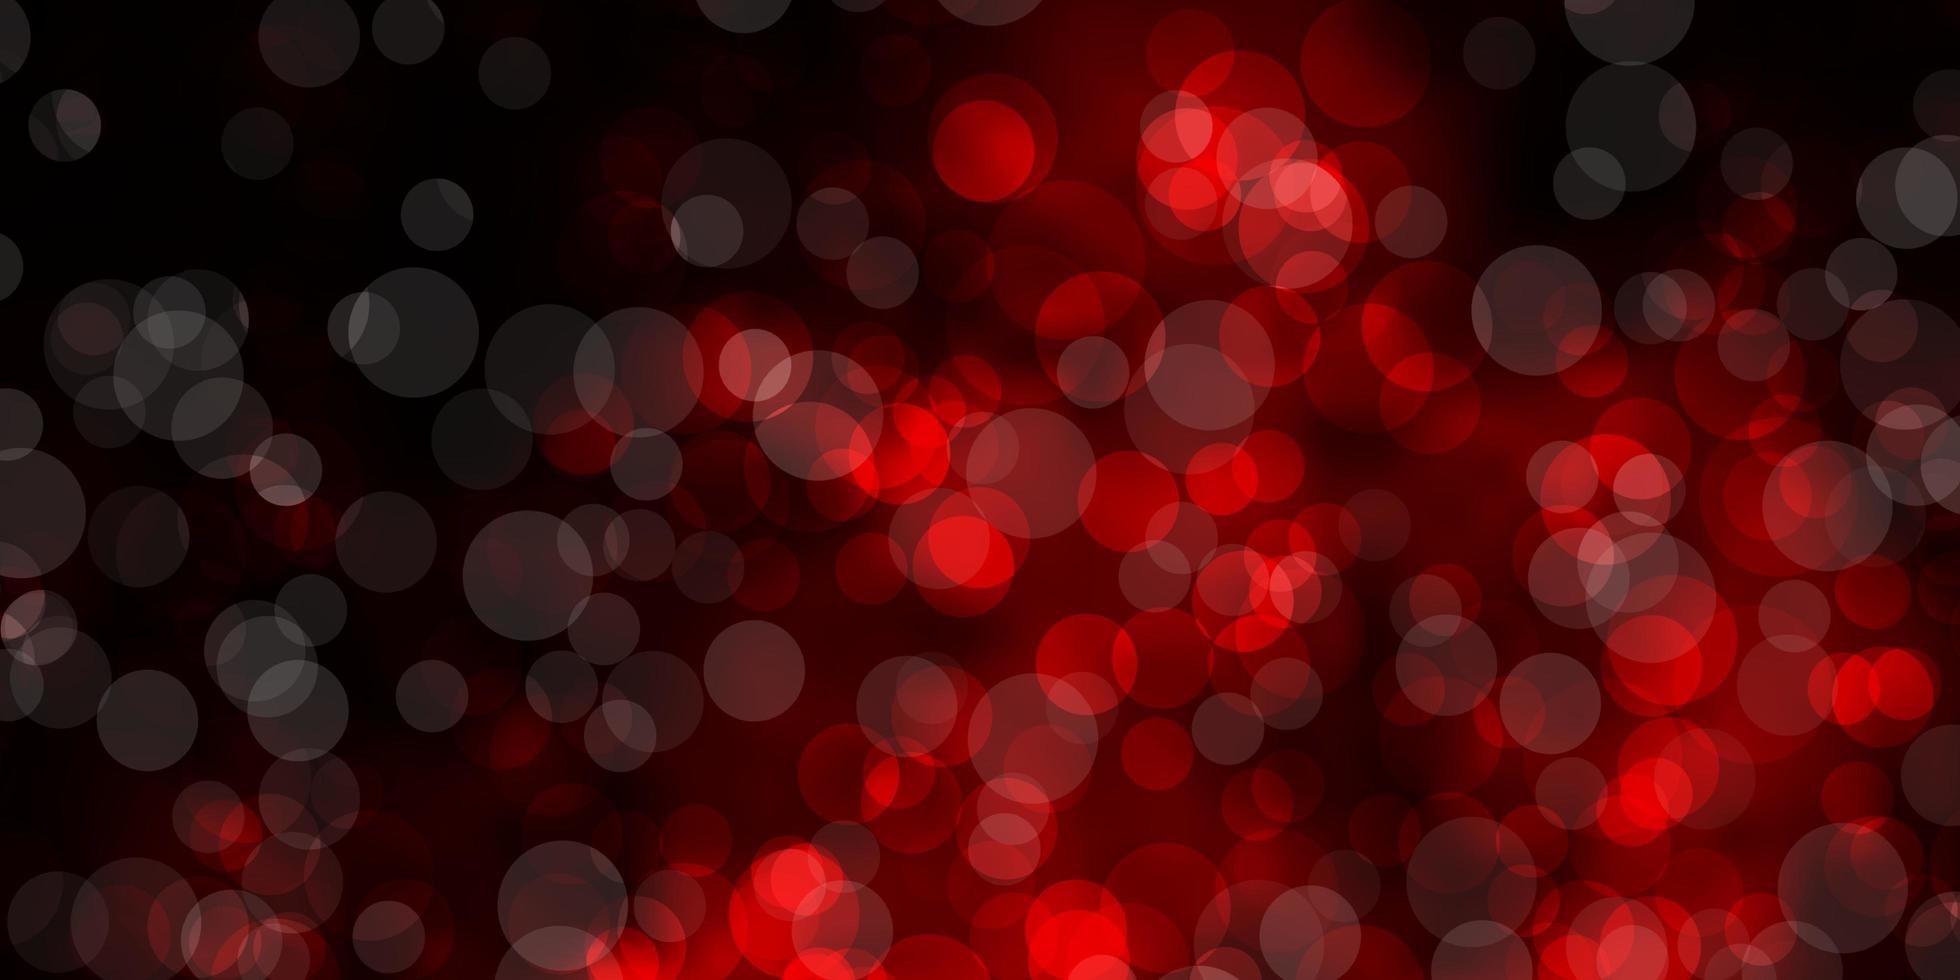 padrão de vetor vermelho escuro com esferas.